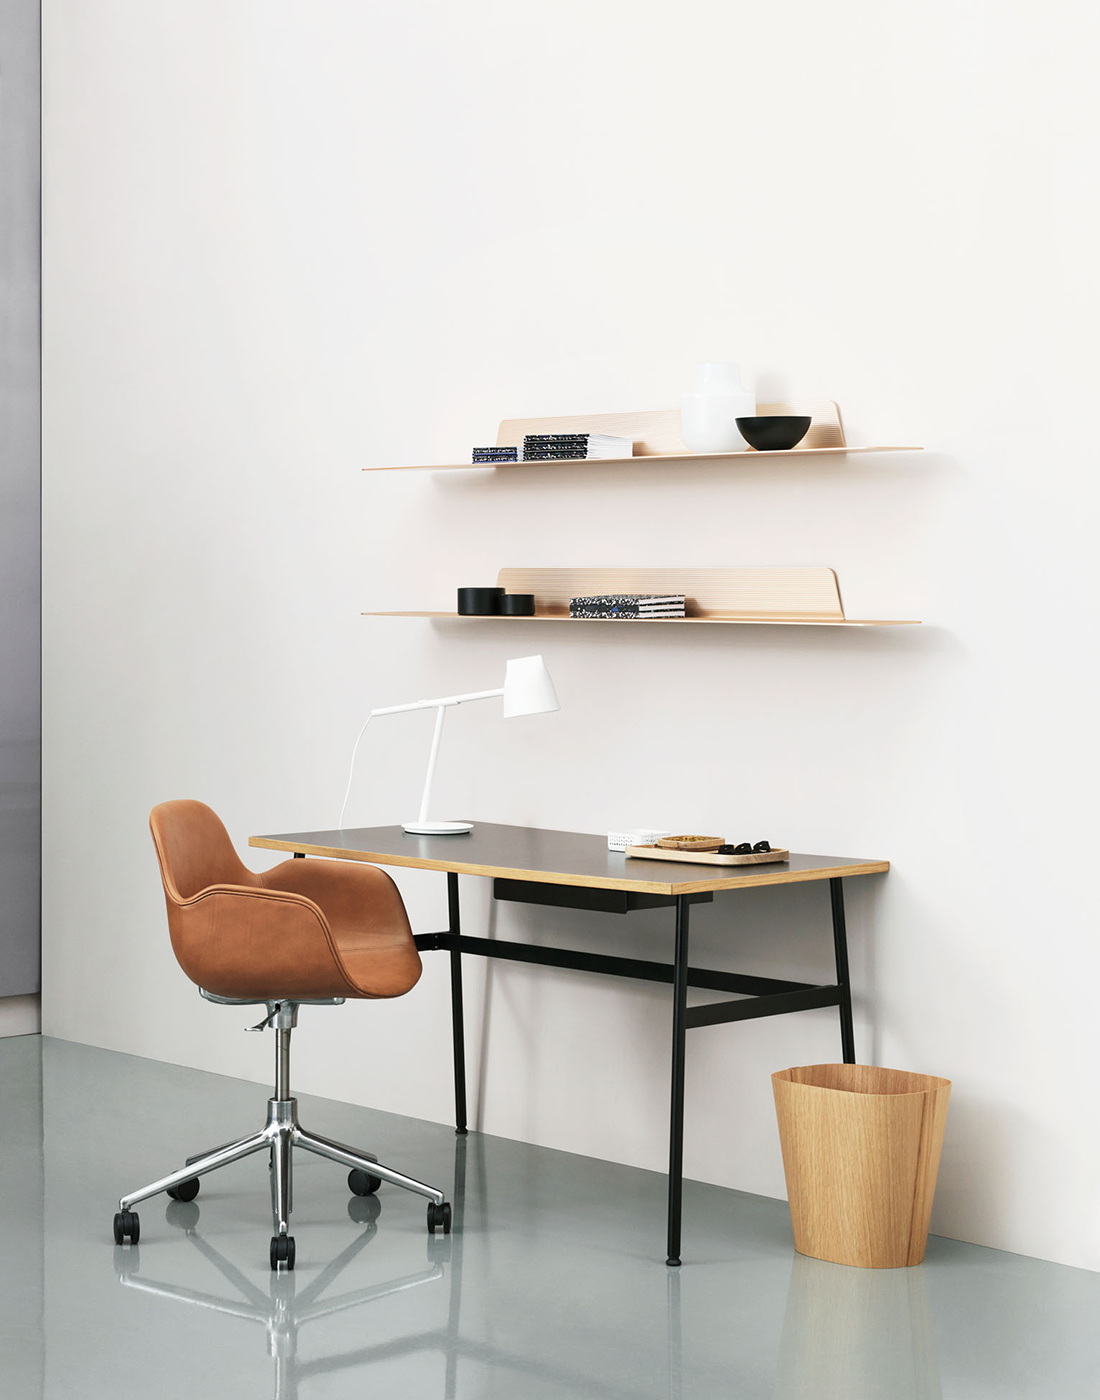 Büro minimalistisch und skandinavisch eingerichtet